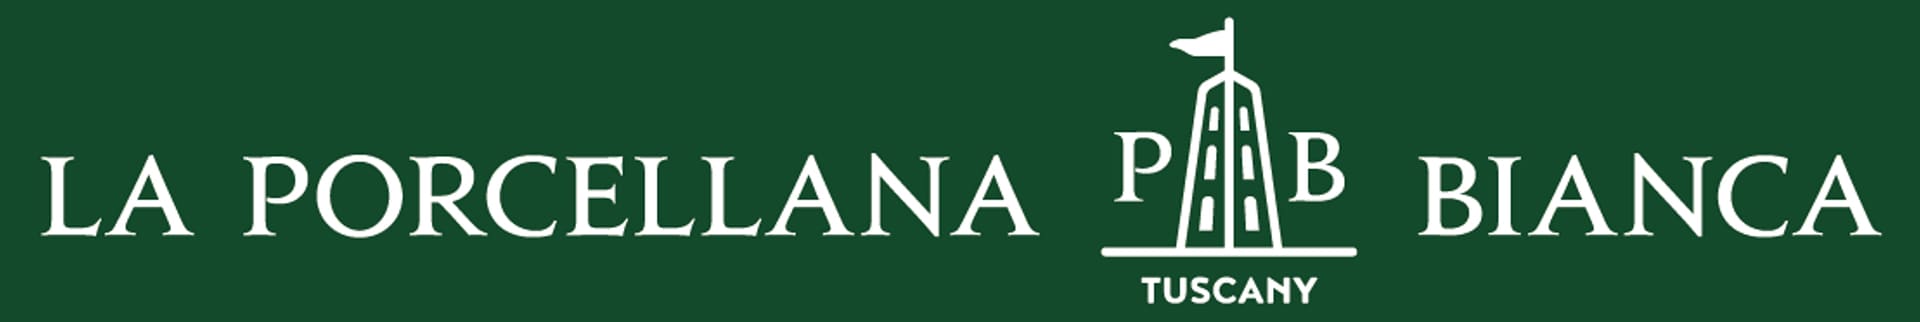 LA PORCELLANA BIANCA-logo